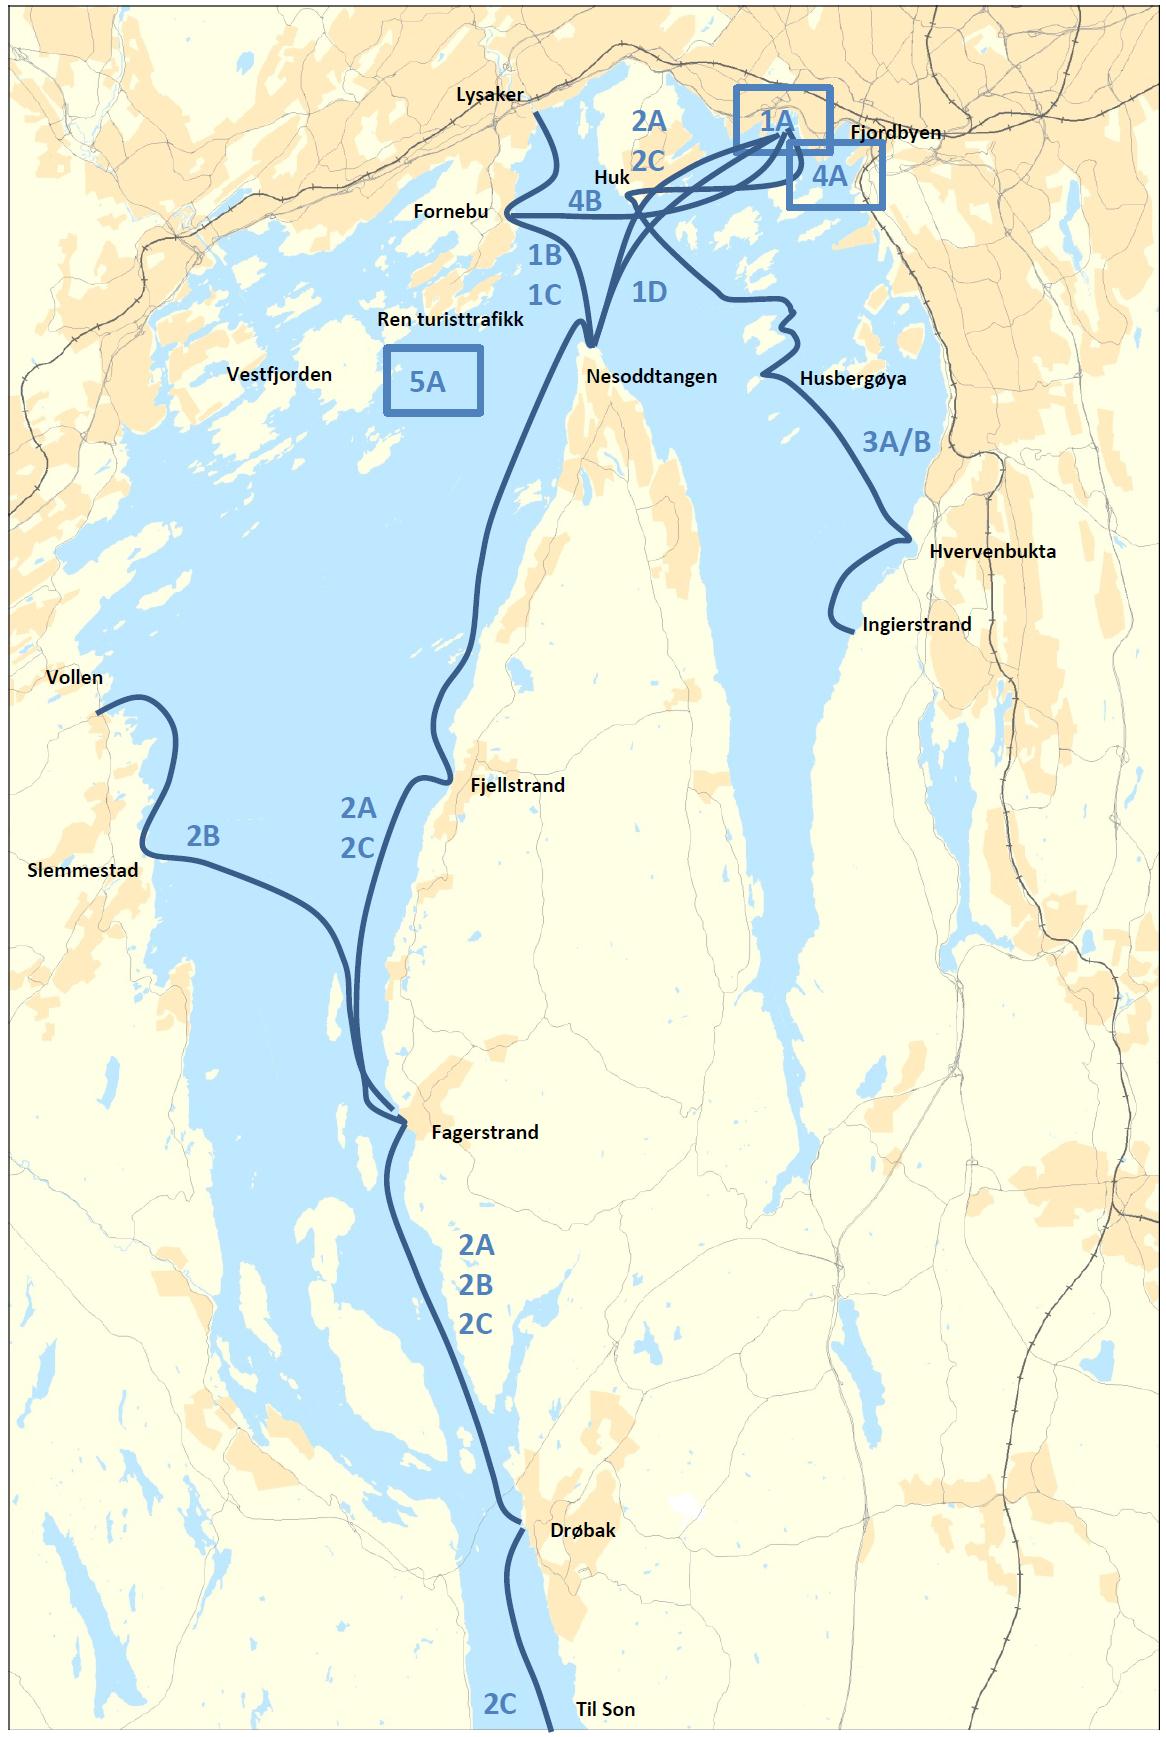 Vurderte tilbudsutvidelser 1A Forbedret rutetilbud til øyene i Oslo, basert på terminal Rådhusbrygga 1B Utvidelse av hurtigbåtruten Nesoddtangen Lysaker til via Fornebu 1C Økt kapasitet og frekvens